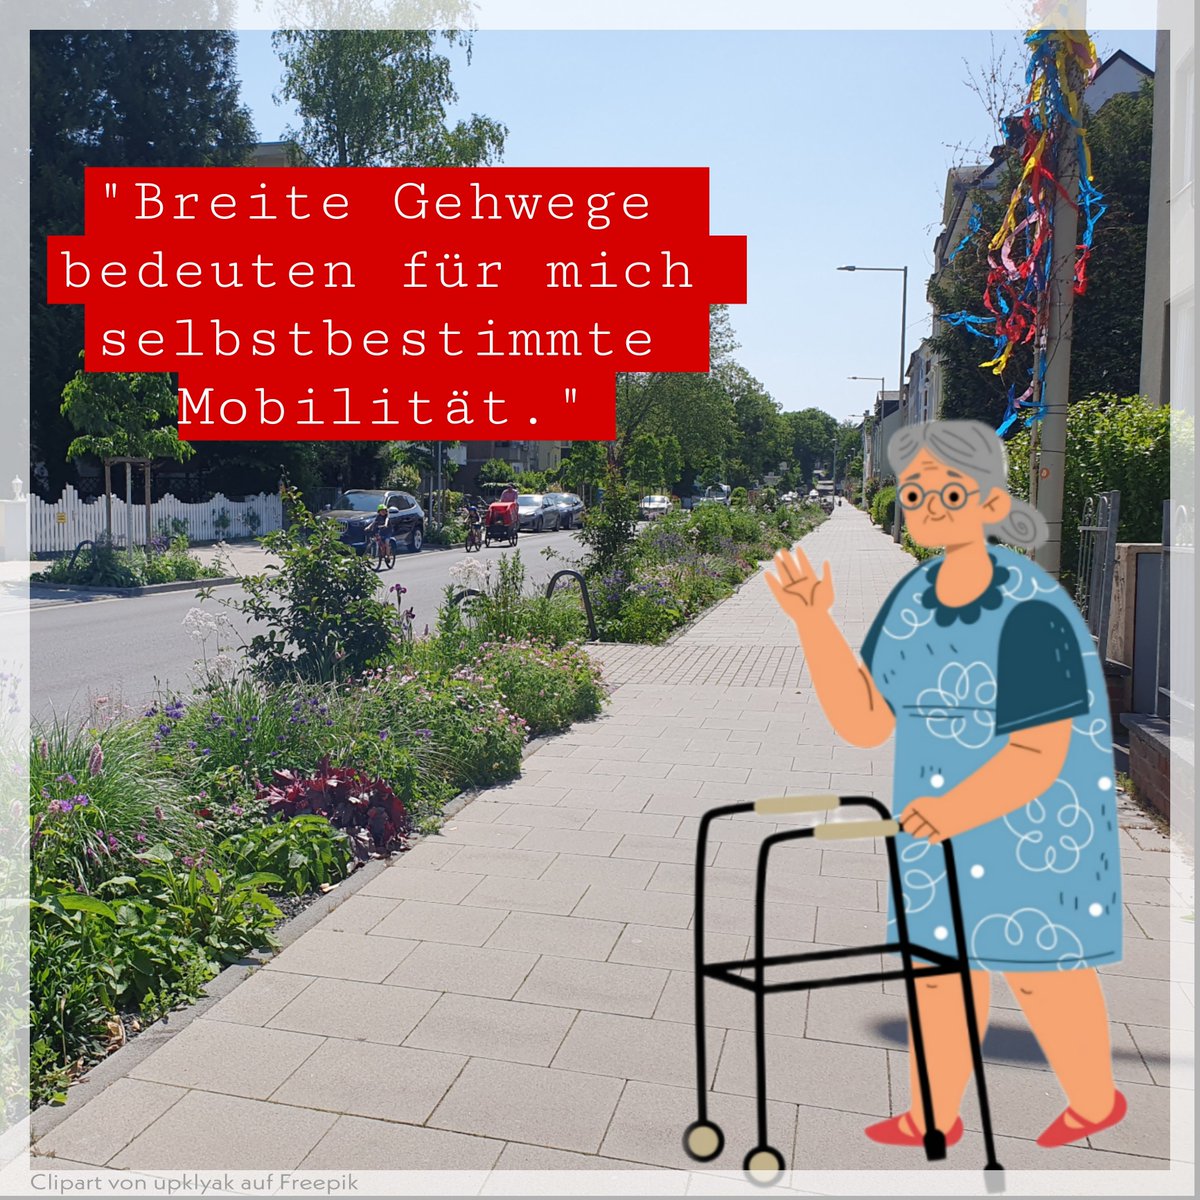 Verkehrswende schafft Mobilität für alle.

#Bonn #vorfahrtvernunft #Verkehrswende #IHKBonn